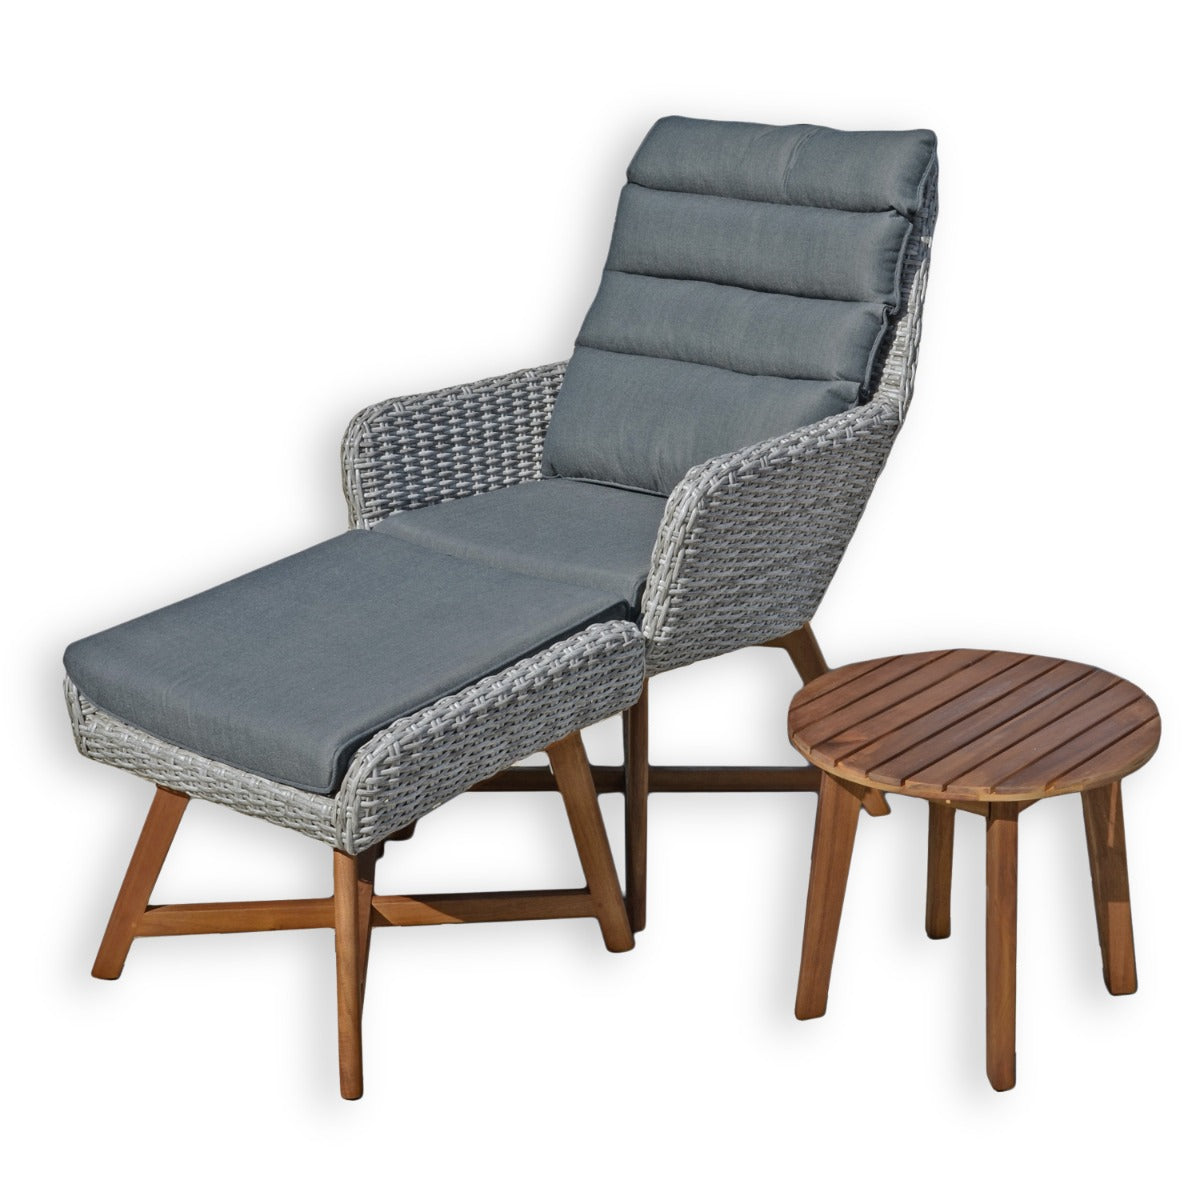 Balkon Loungemöbel Rattan Lounge-Set Sessel Hocker mit Auflagen Beistelltisch Farbe: grau